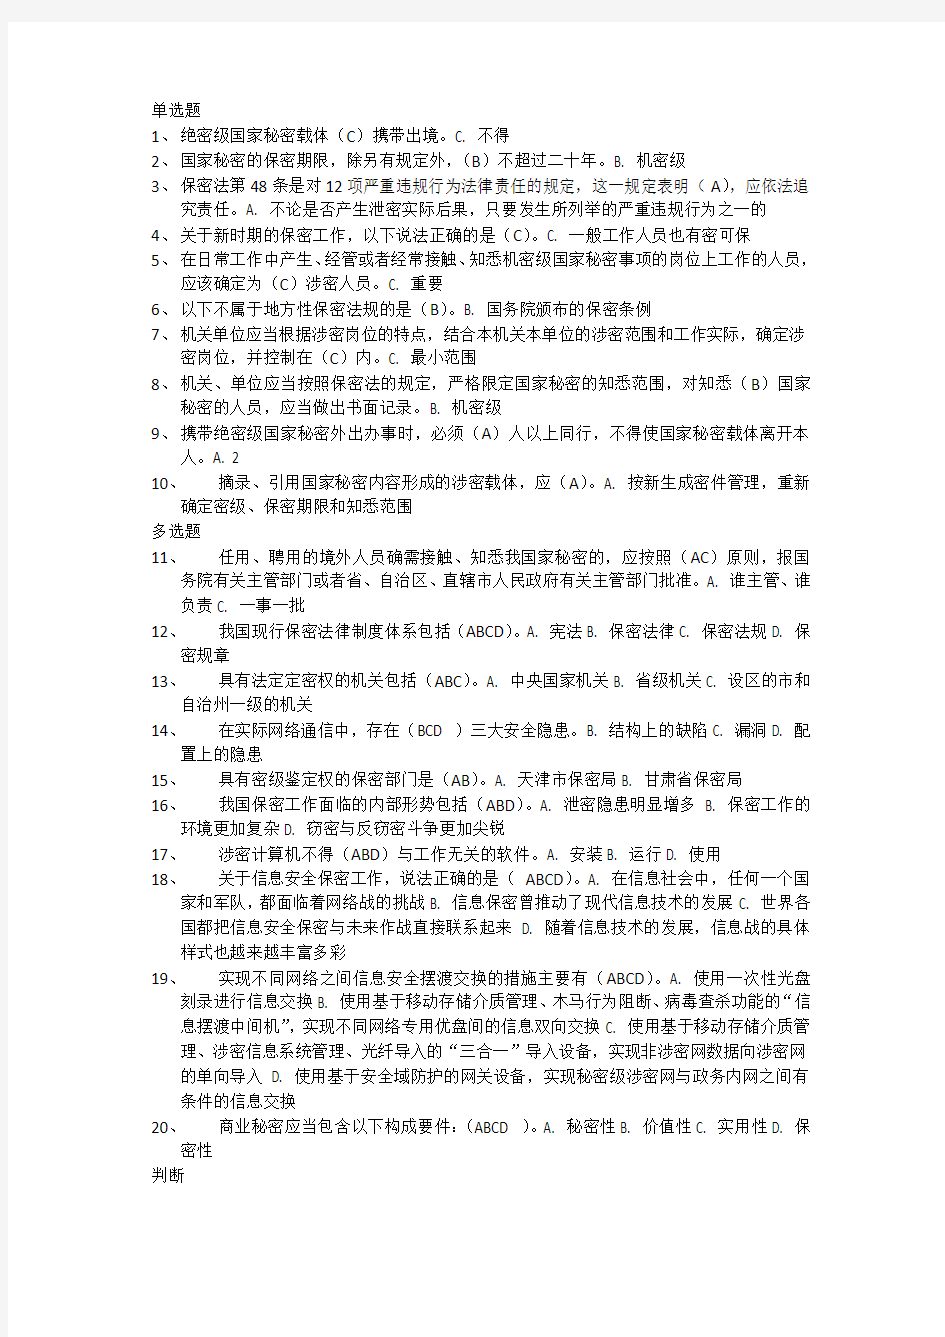 2017年河北省公需科目培训专业技术人员保密教育考试试题